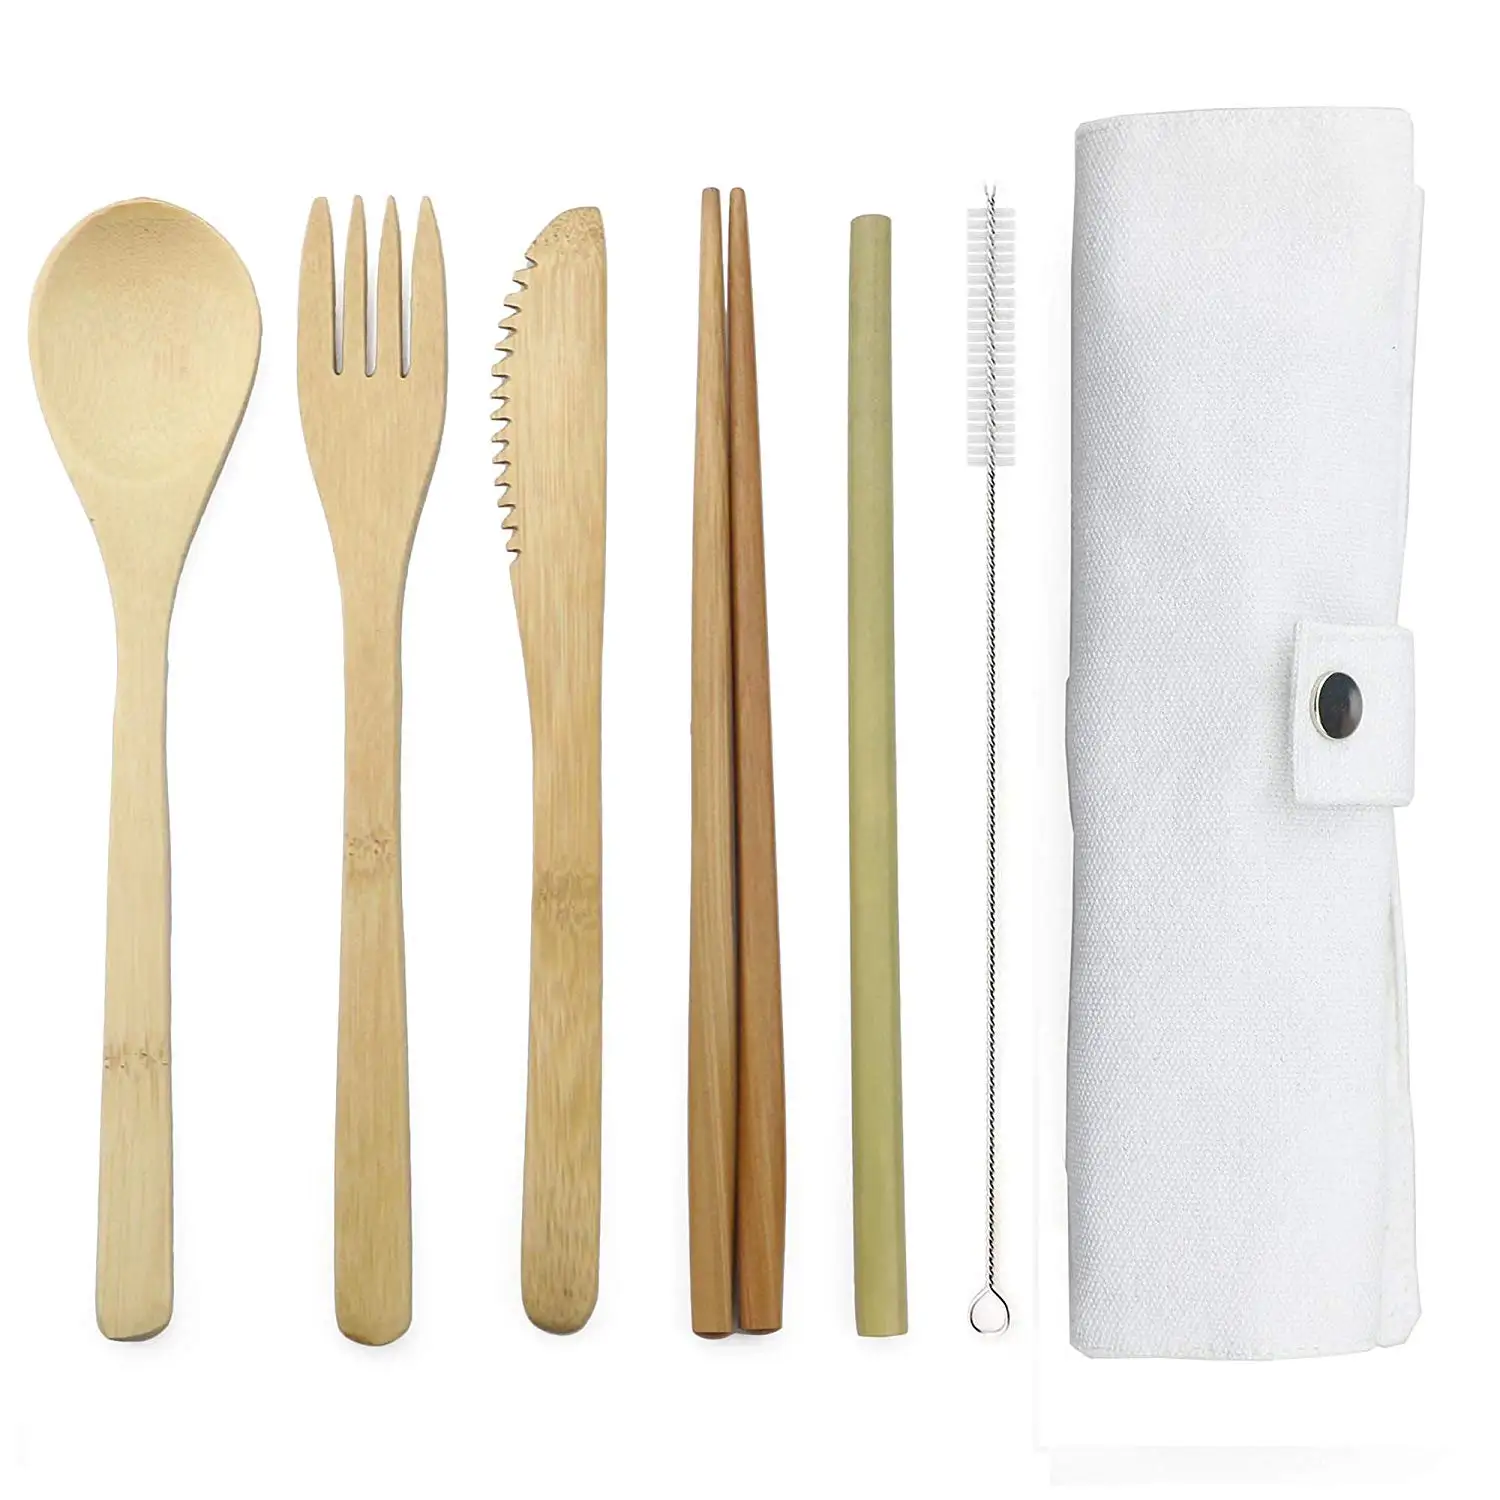 7 шт. японская деревянная посуда набор столовых приборов из бамбука с тканевой сумкой ножи вилка палочки для еды путешествия дропшиппинг - Цвет: White